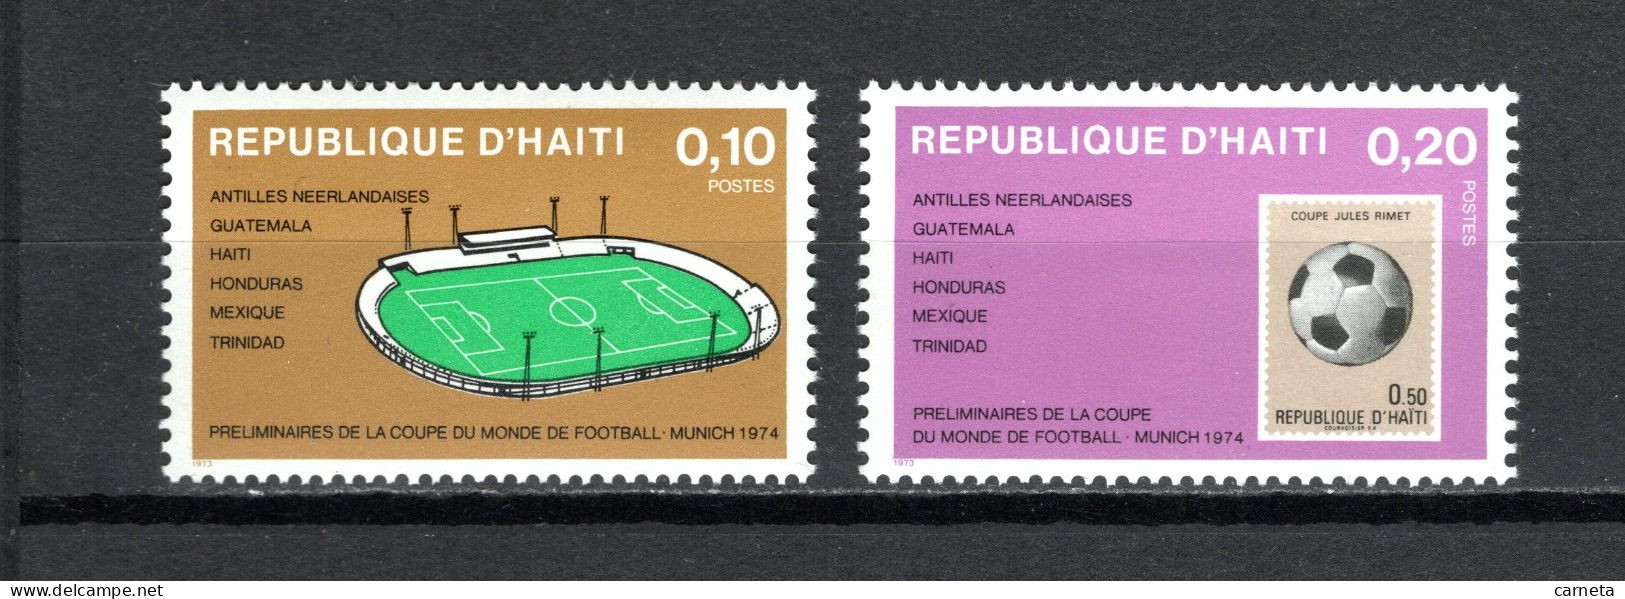 HAITI   N° 738 + 739   NEUFS SANS CHARNIERE COTE  0.50€     FOOTBALL STADE SPORT - Haïti